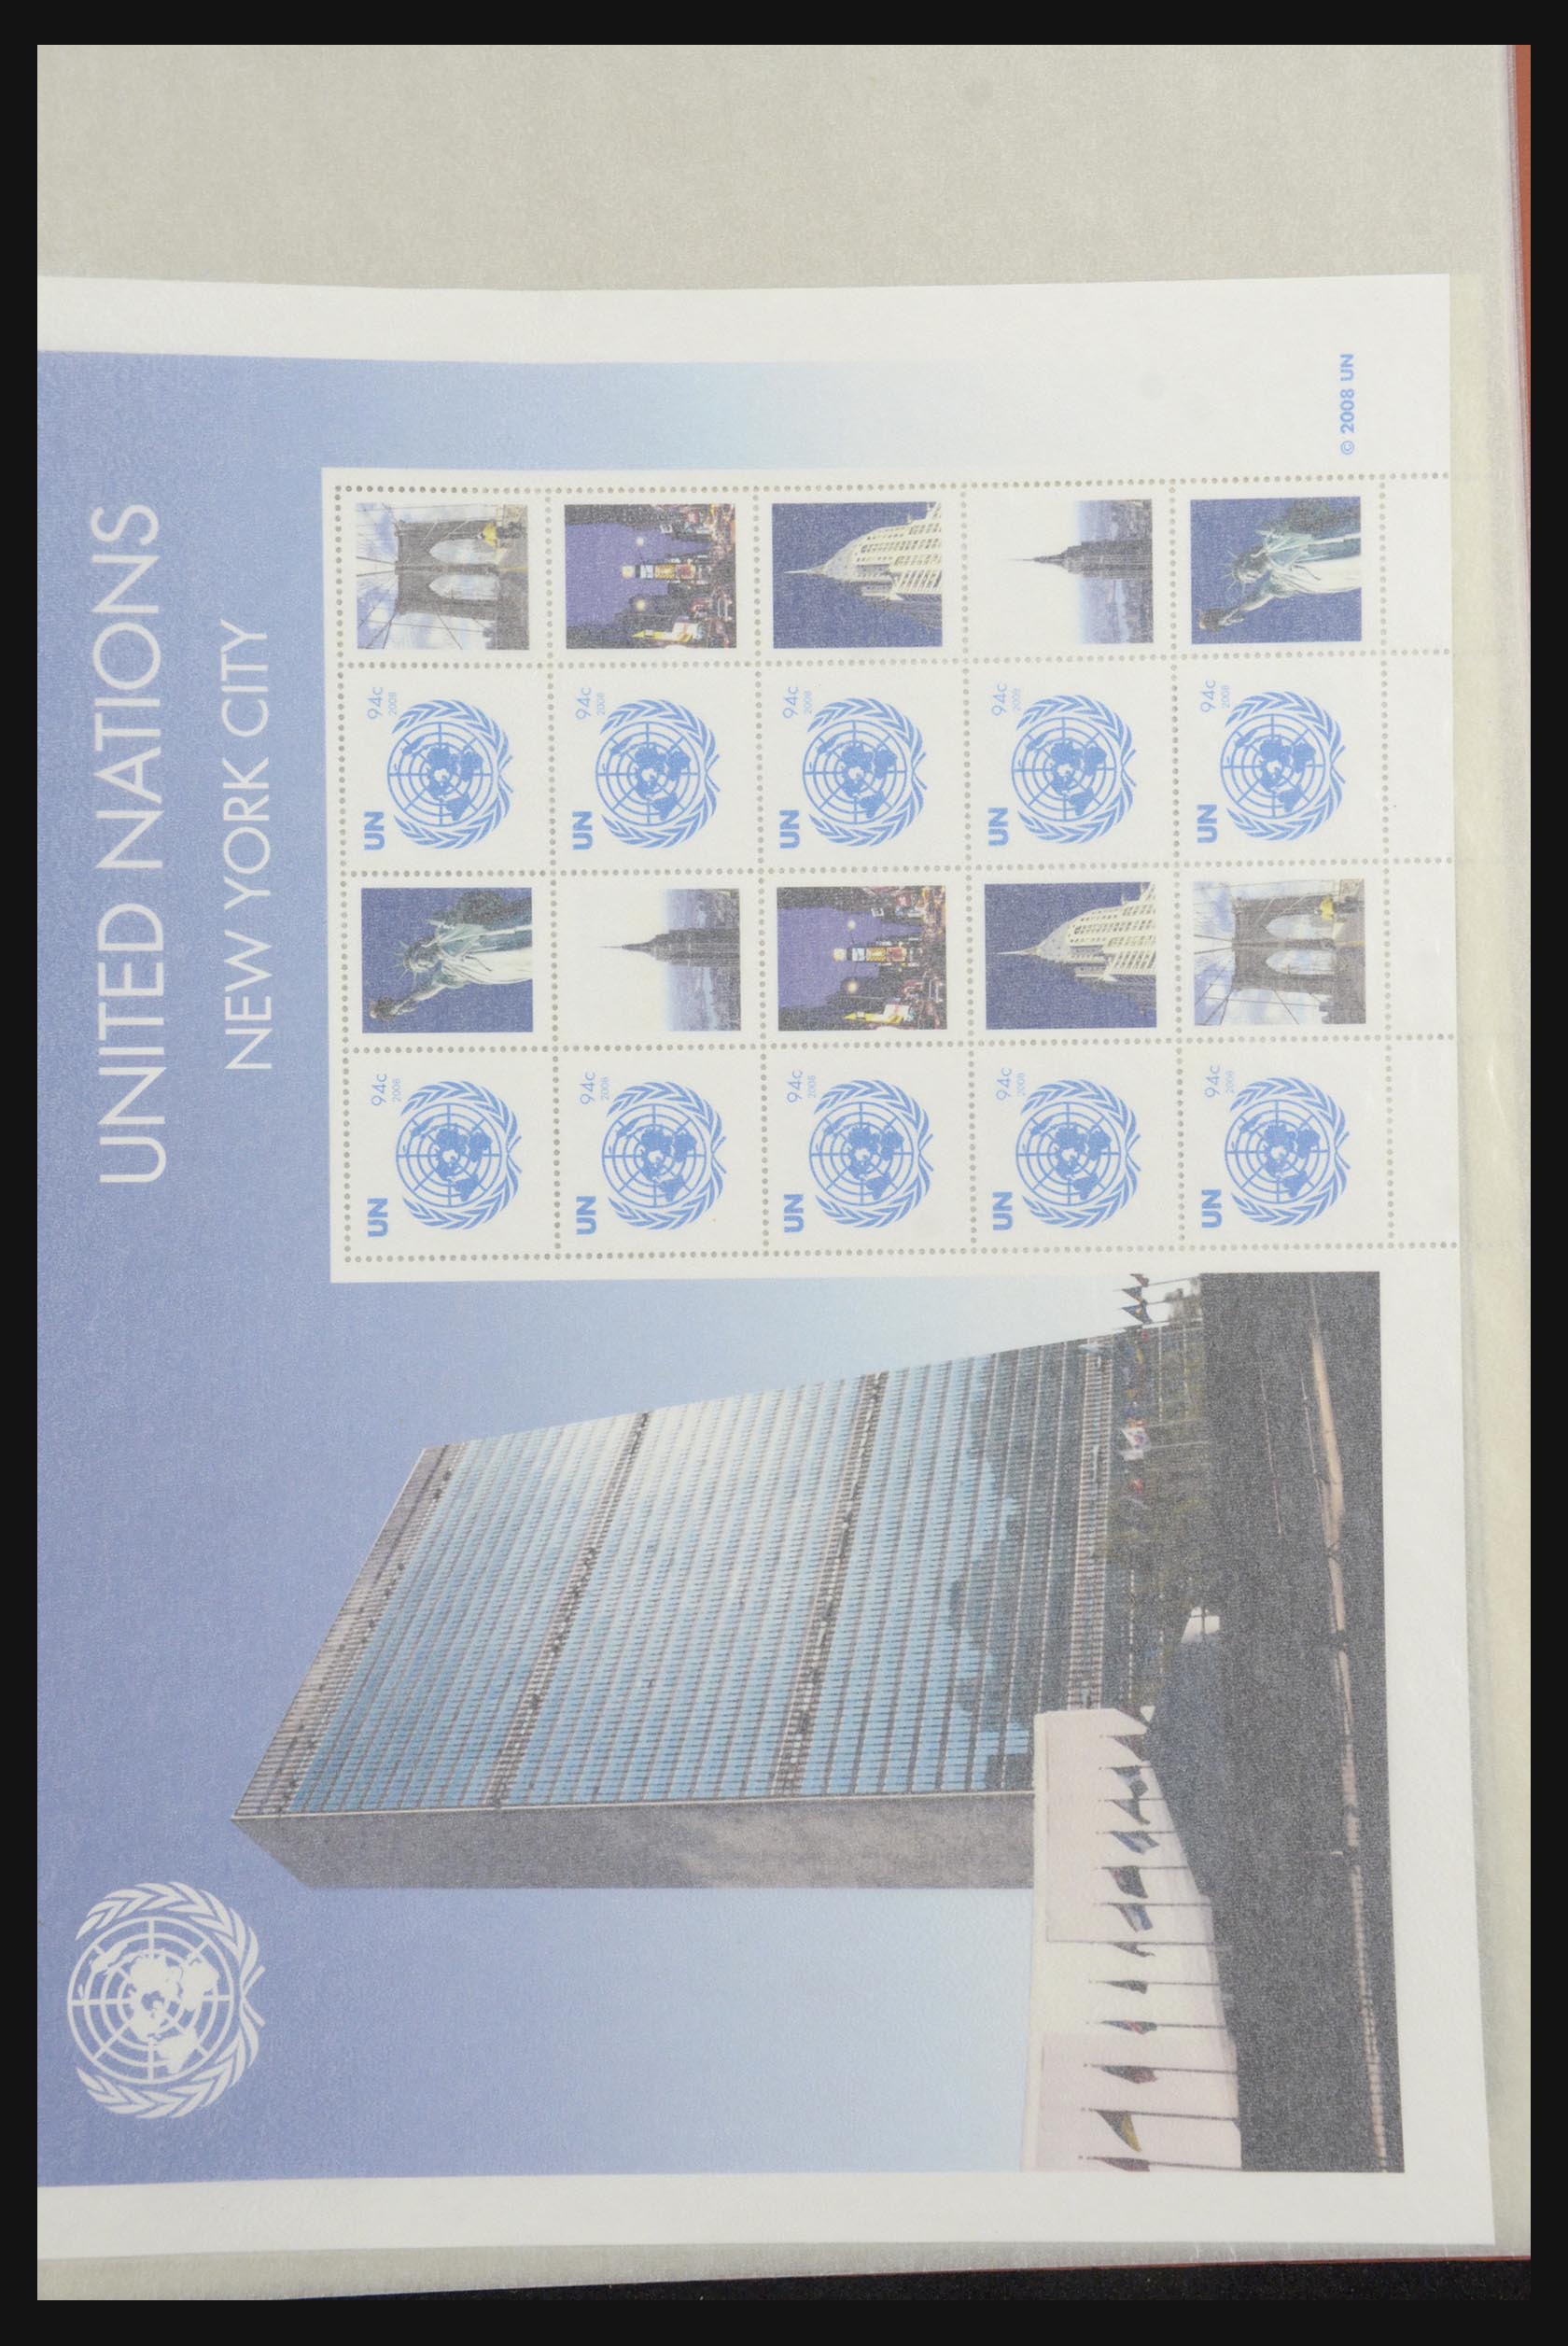 31674 009 - 31674 Verenigde Naties persoonlijke velletjes 2003-2012.